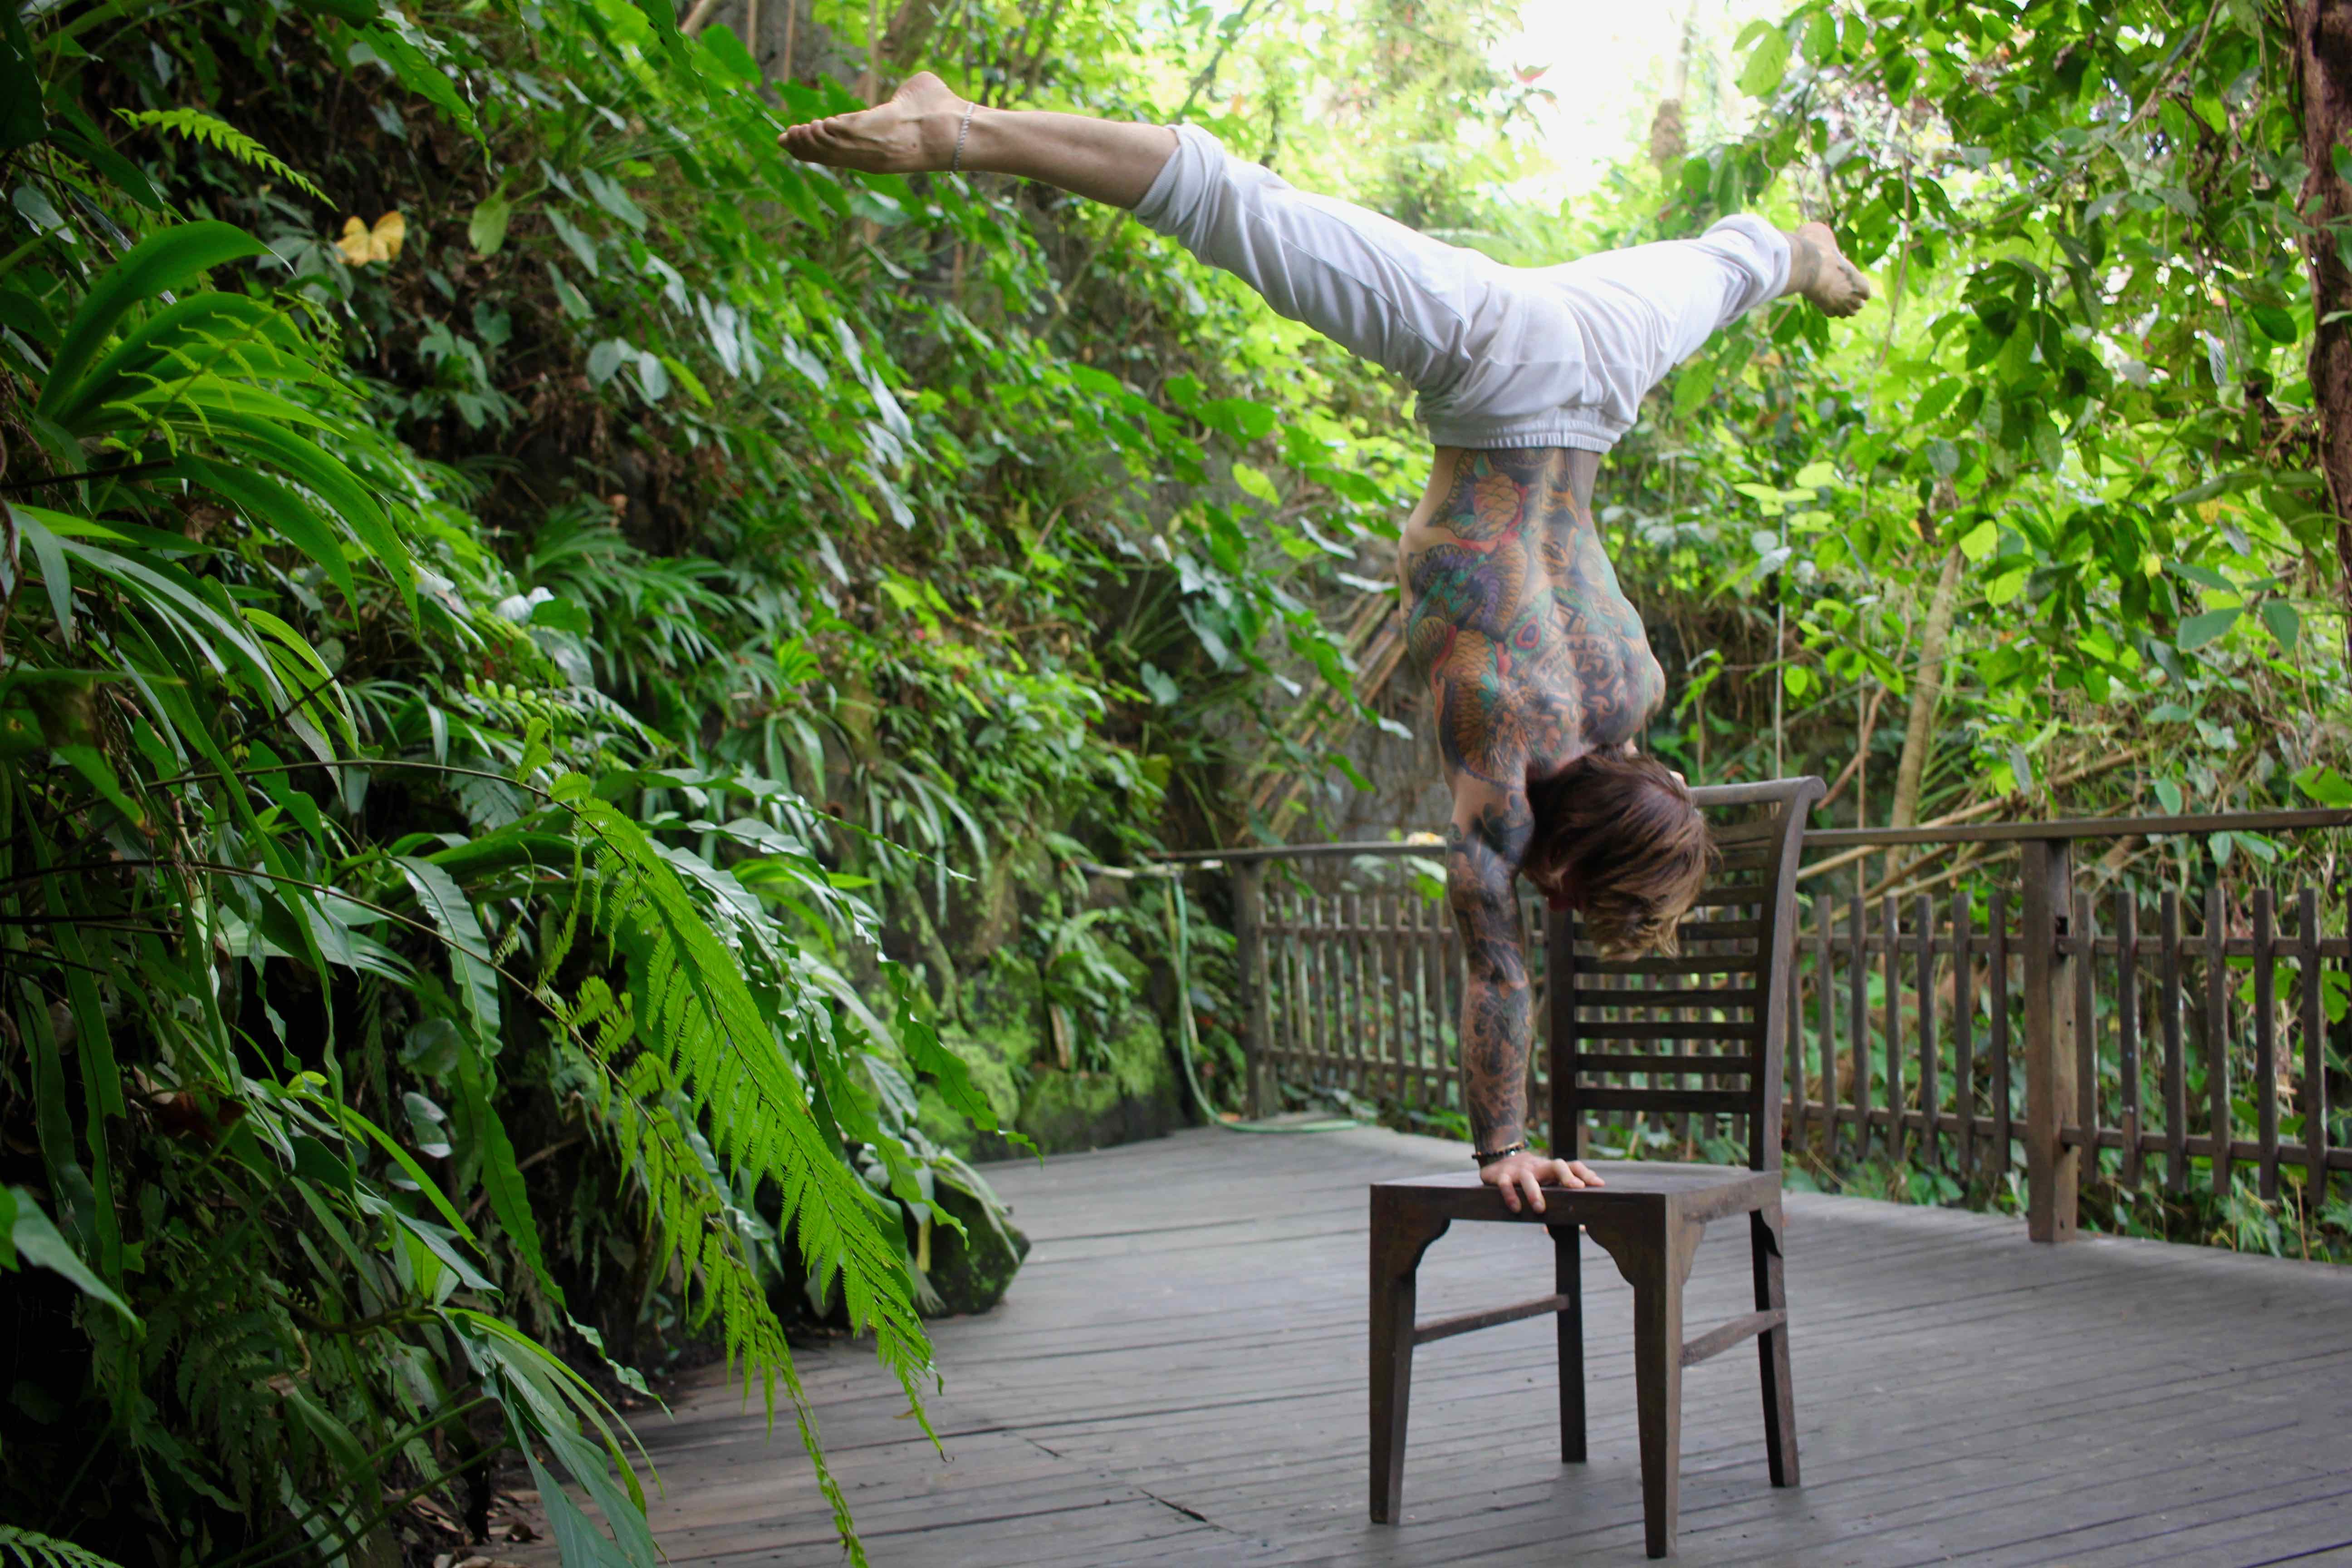 Daniel - A new friend, running a yoga teacher training in Ubud, Bali